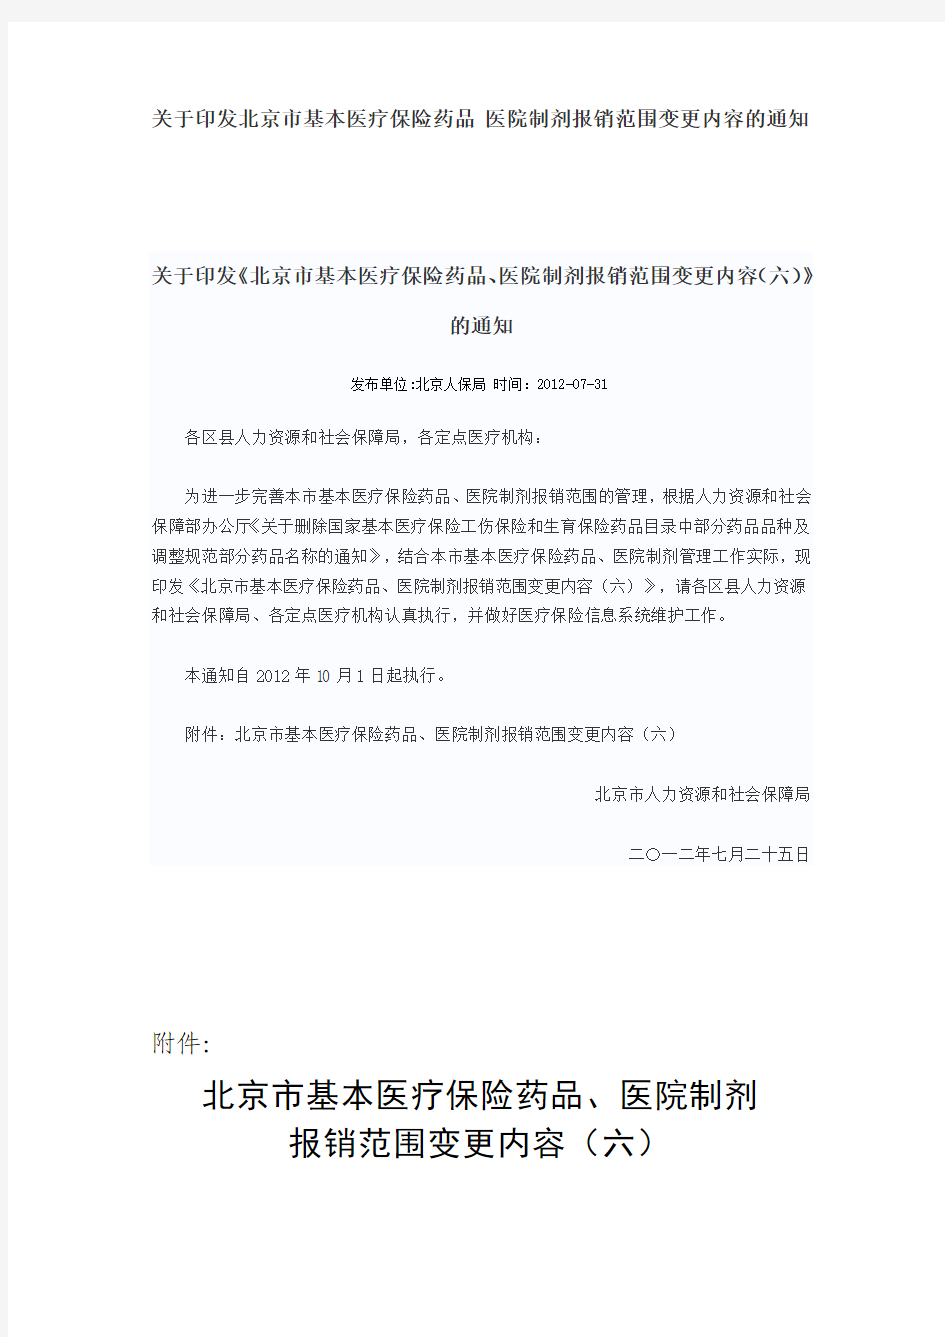 《北京市基本医疗保险药品、医院制剂报销范围变更内容(六)》的通知